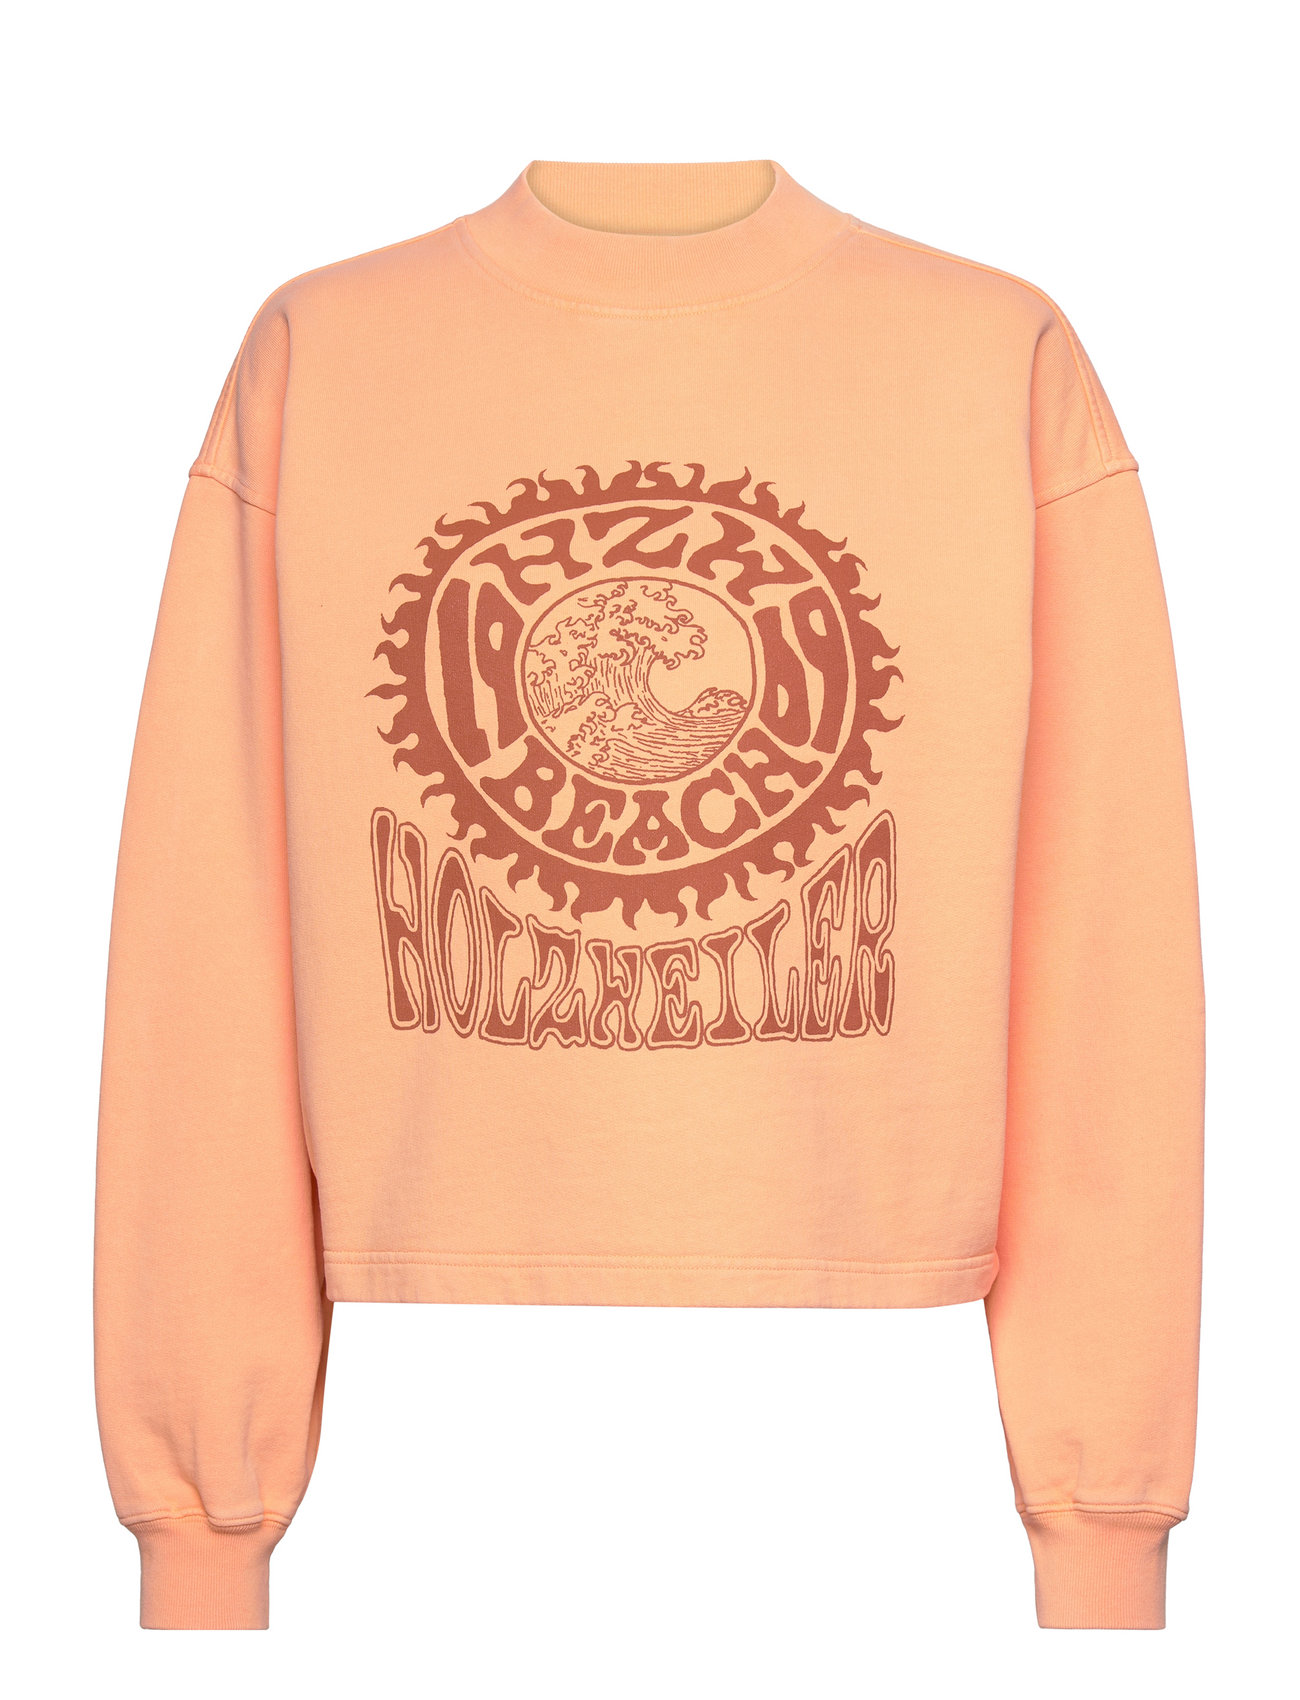 W. Mezzanine Crop Surf Crew Tops Sweat-shirts & Hoodies Sweat-shirts Orange HOLZWEILER